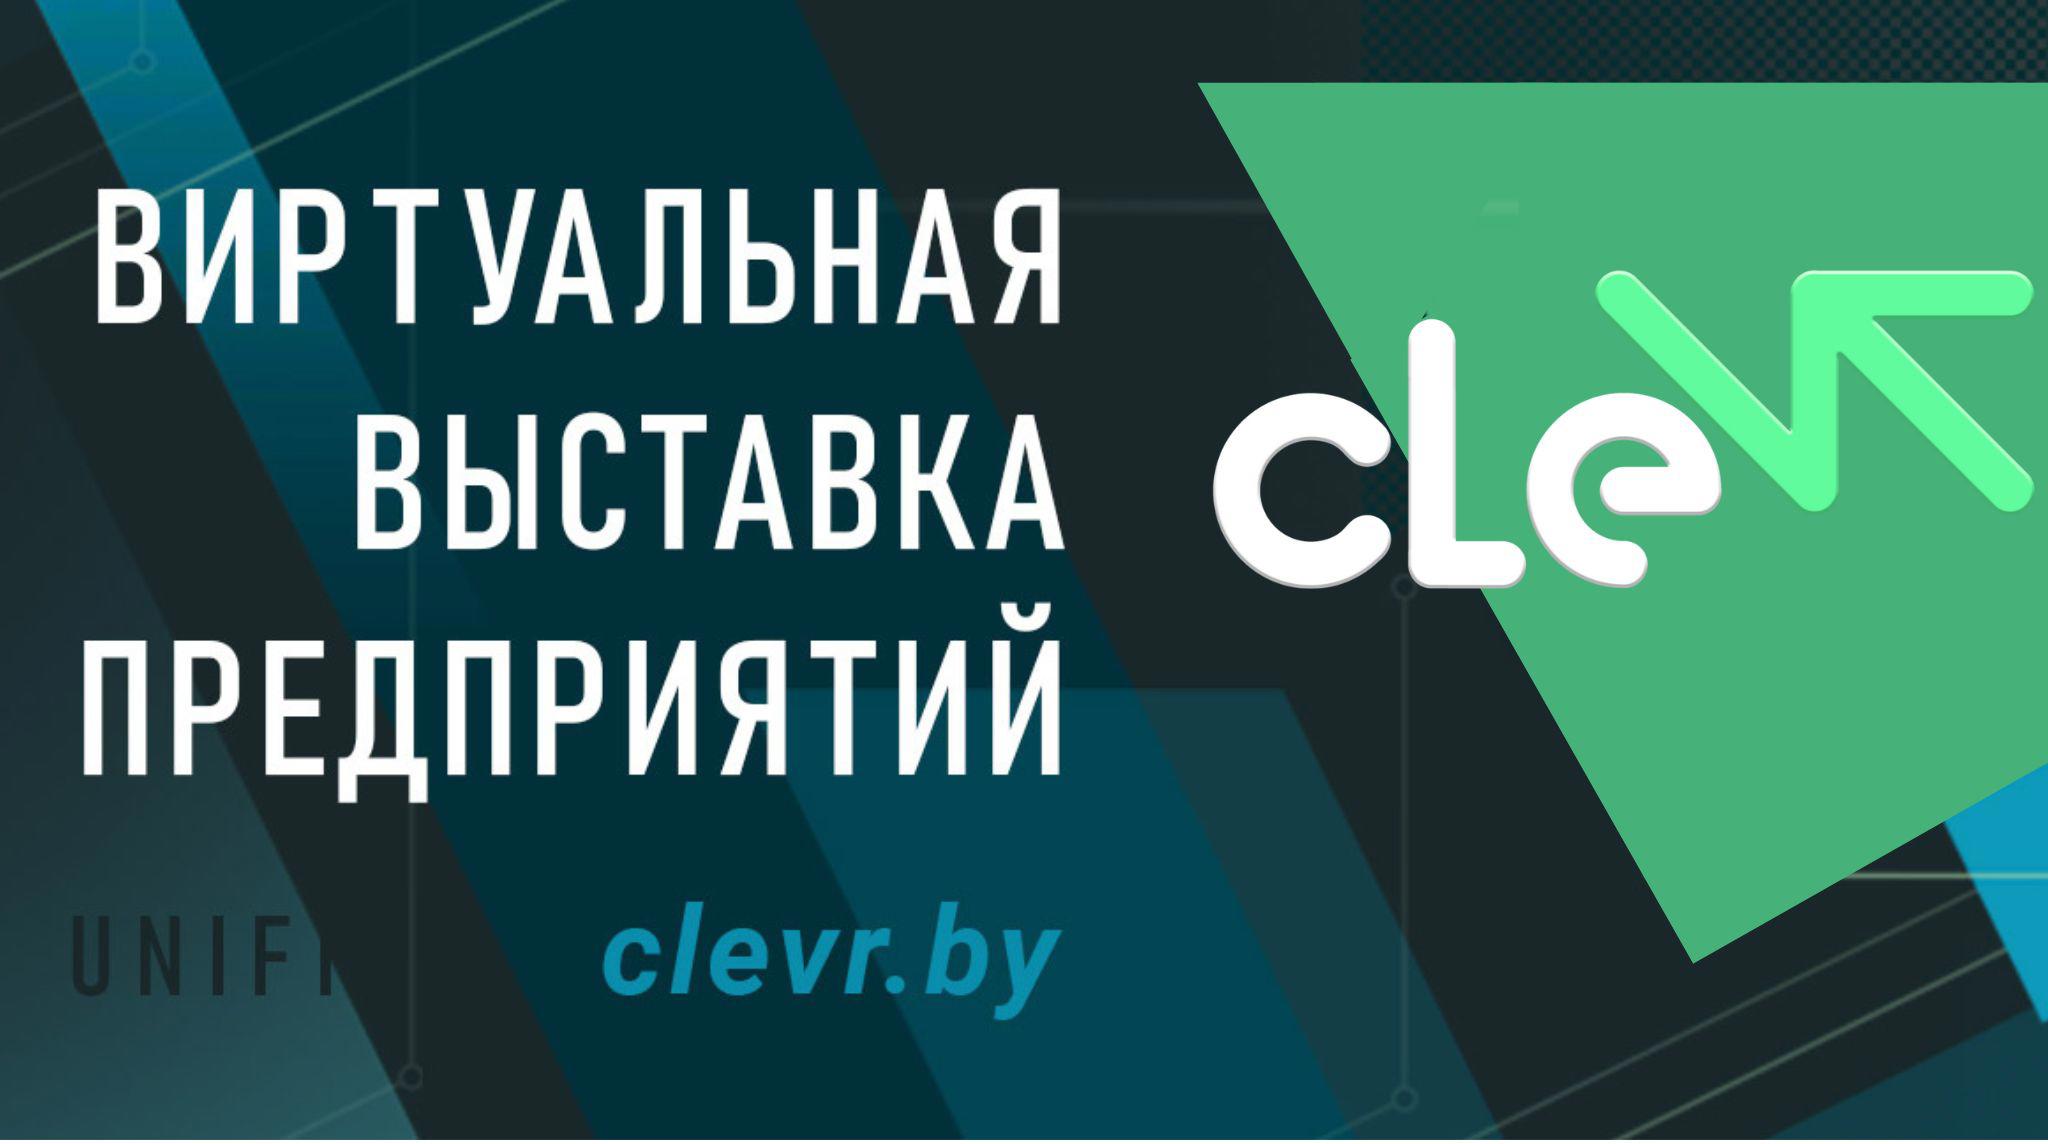 Единая виртуальная выставка предприятий cleVR